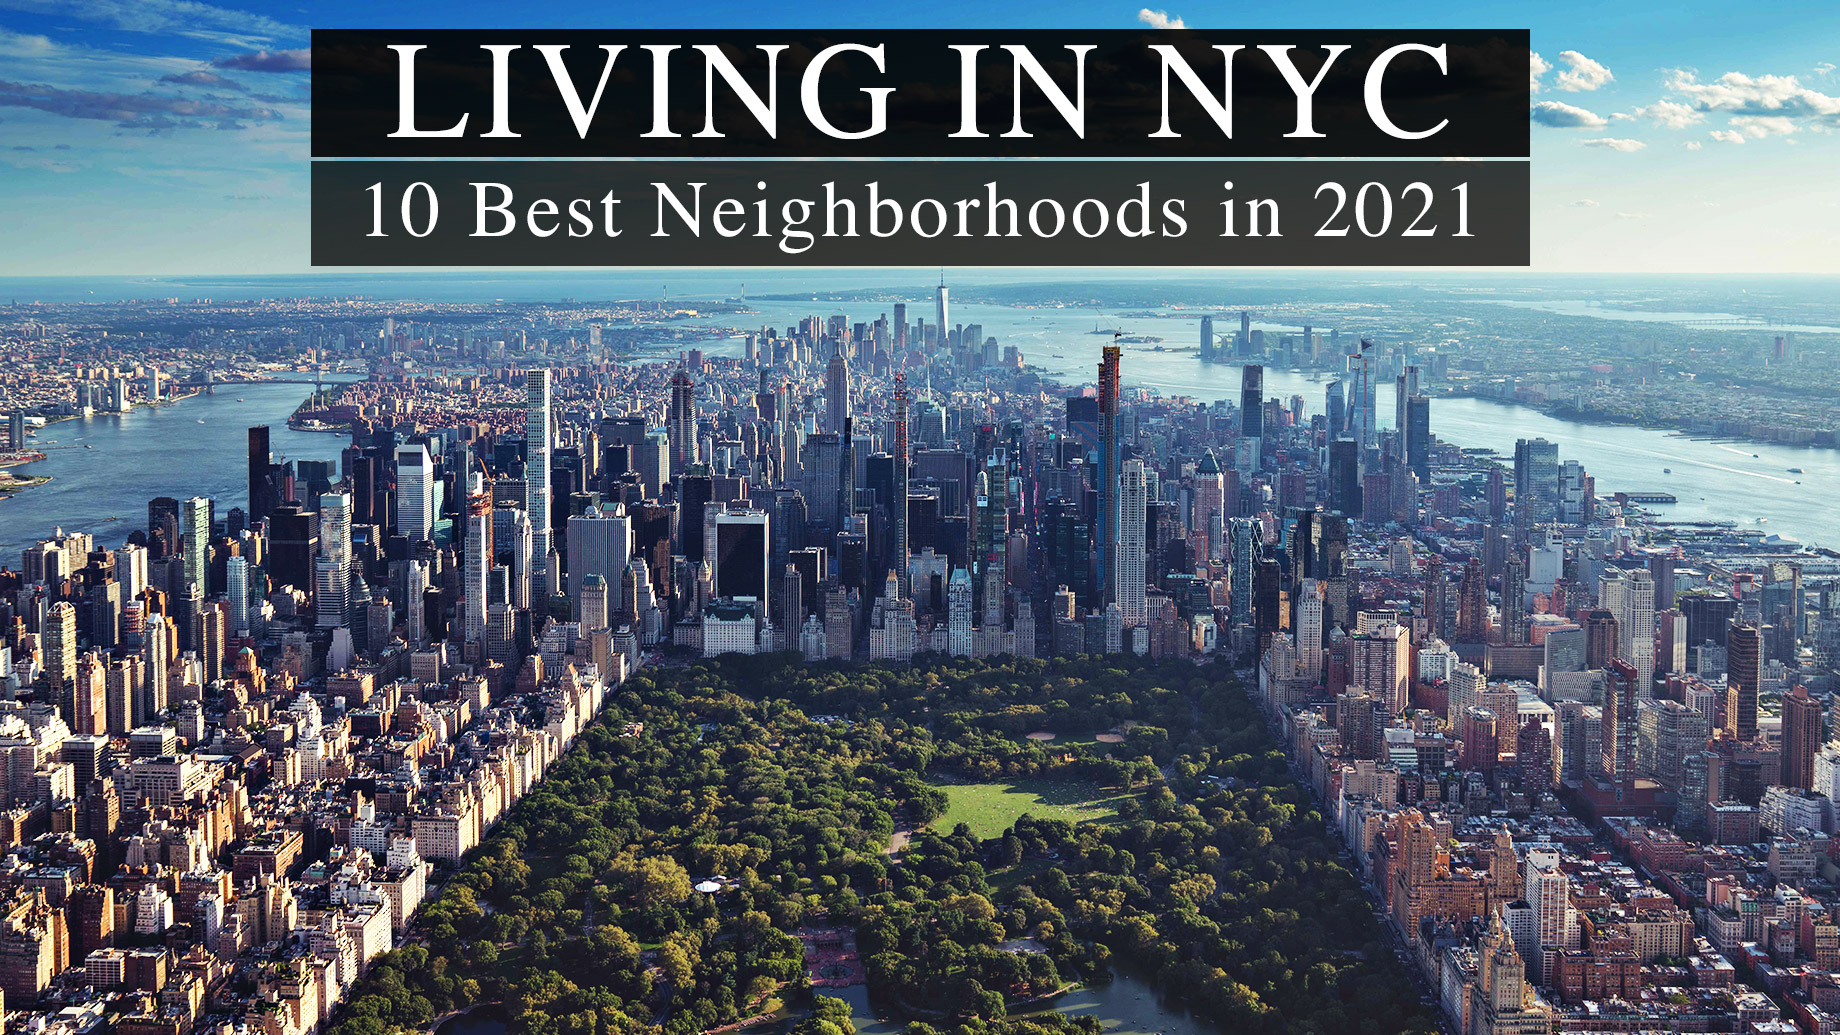 Living in NYC - 10 Best Neighborhoods in 2021